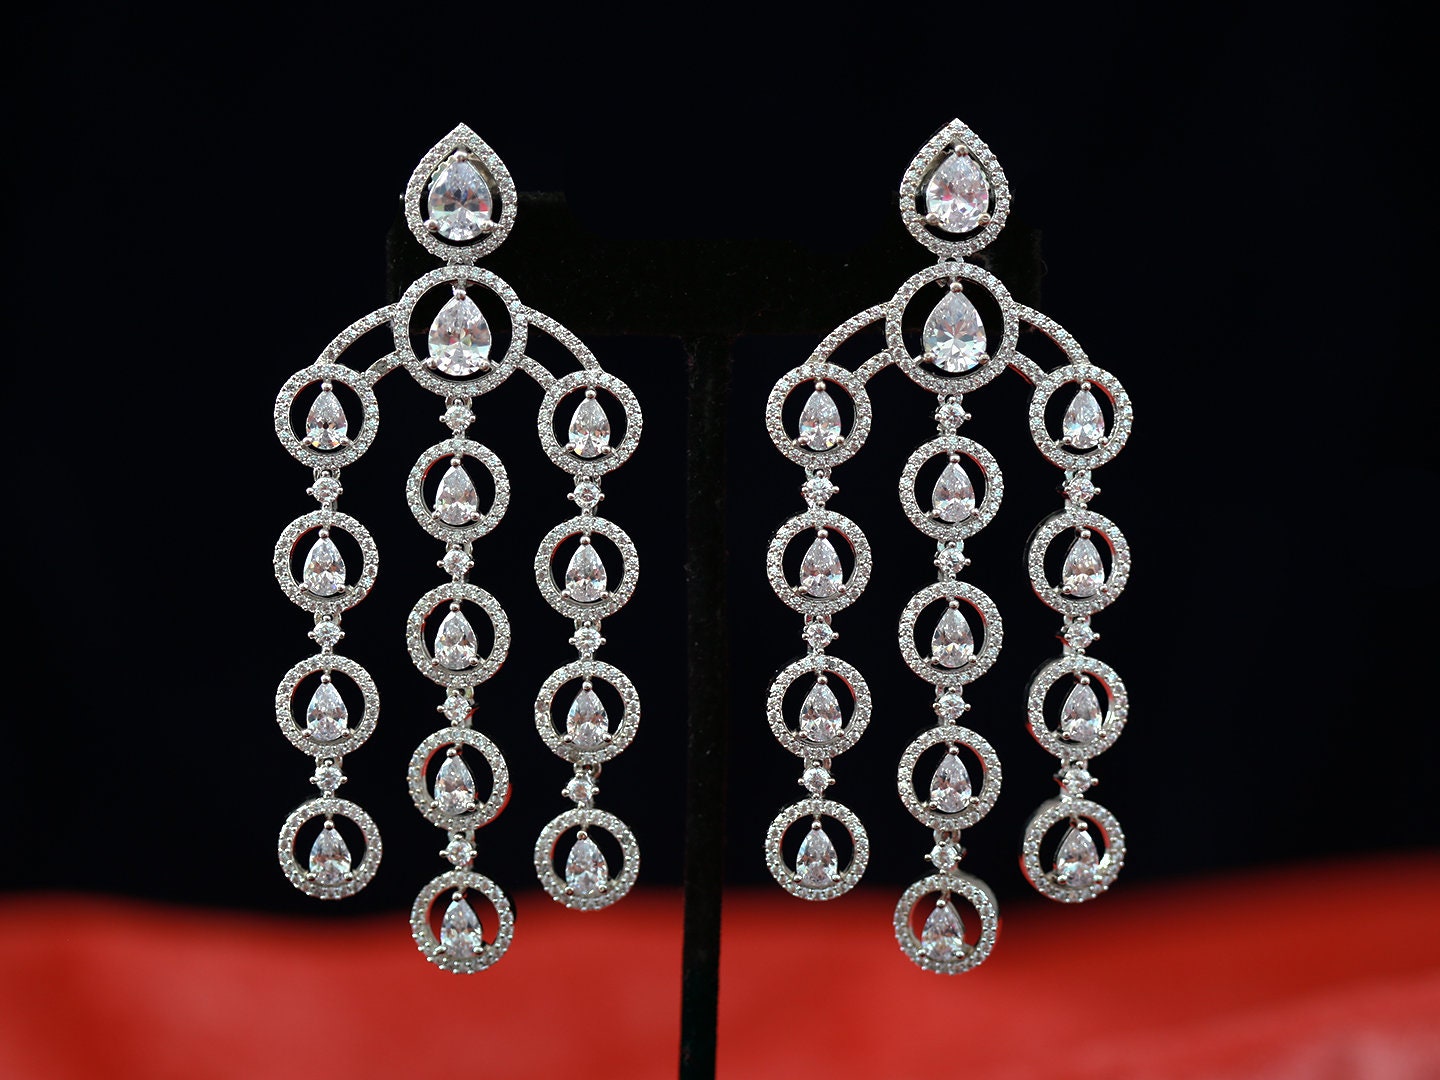 Crystal chandelier earrings for wedding | Silver teardrop dangle earrings | Cz bridal chandelier earrings | Triple strand long drop earrings